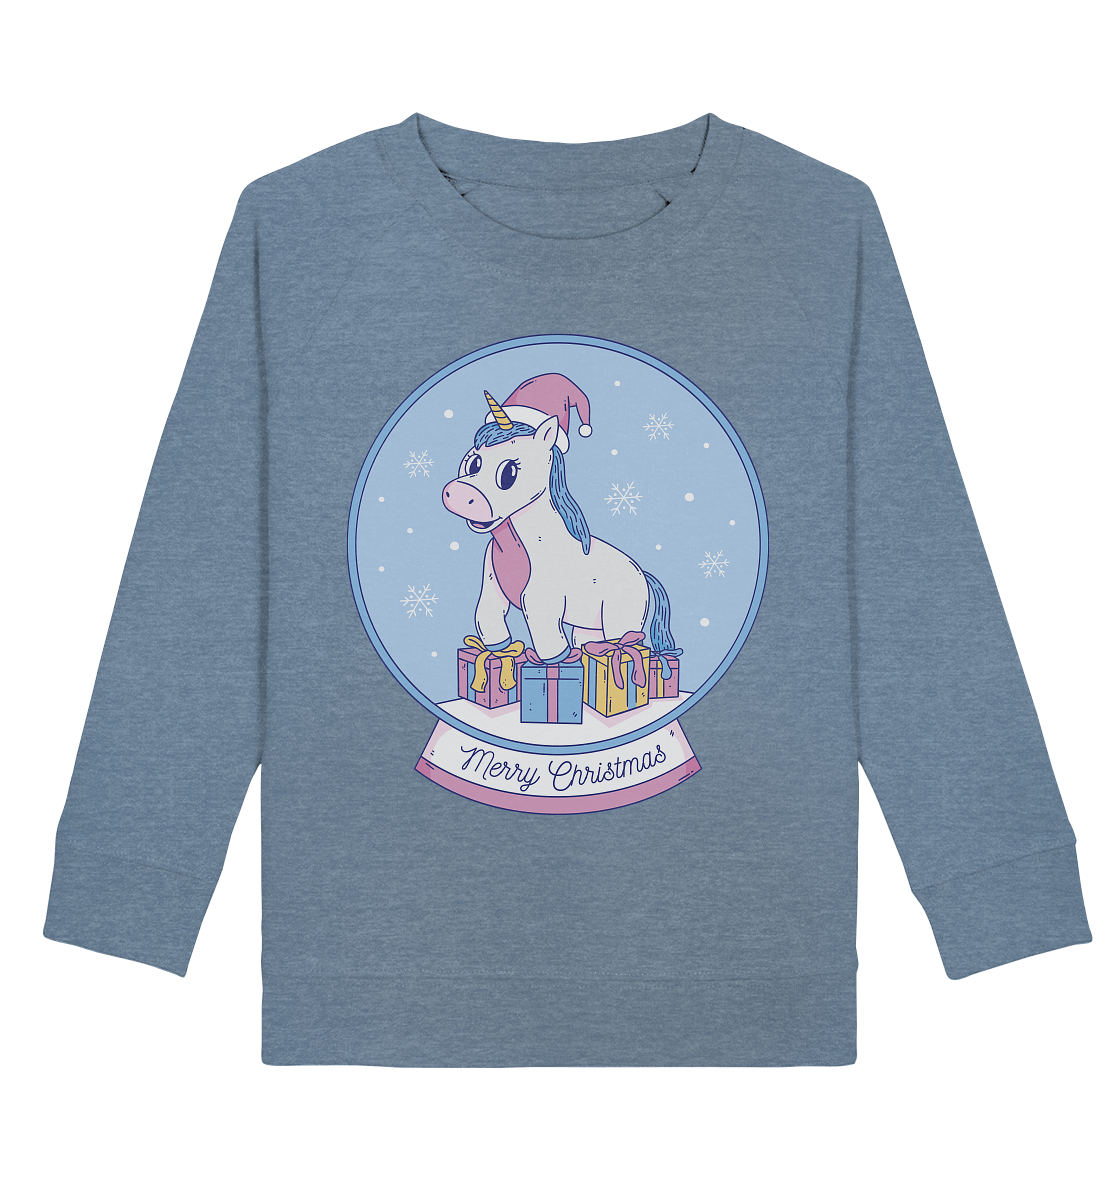 Weihnachten , Weihnachtskugel mit Einhorn , Unicorn Merry Christmas - Kids Organic Sweatshirt